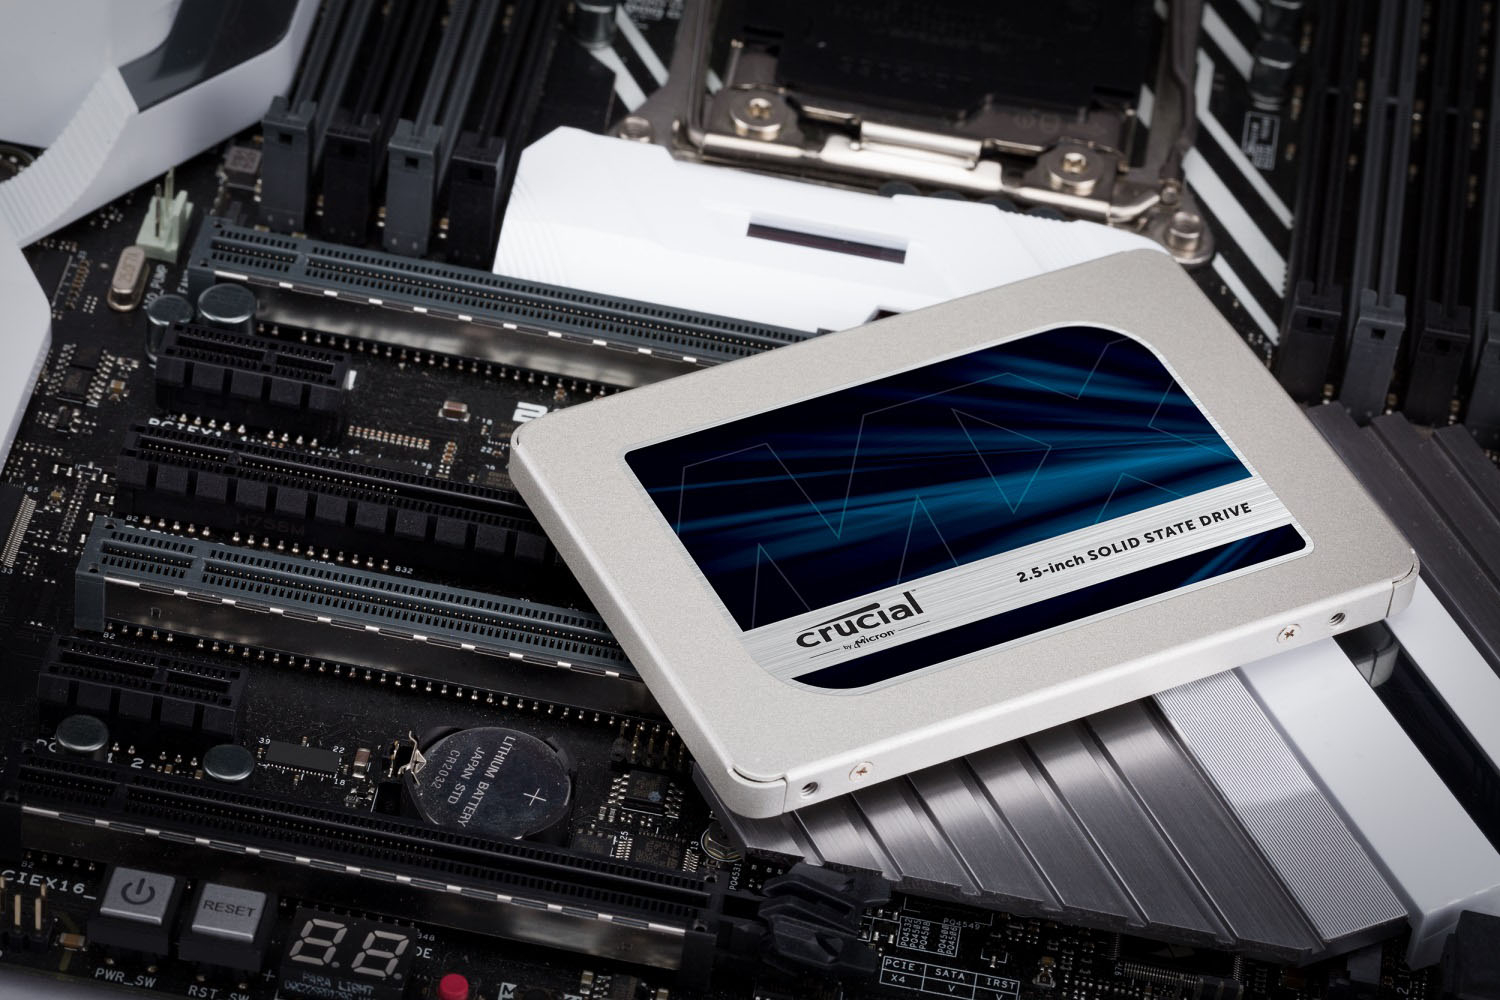 Crucial MX500 4TB Internal SSD SATA CT4000MX500SSD1 - Best Buy